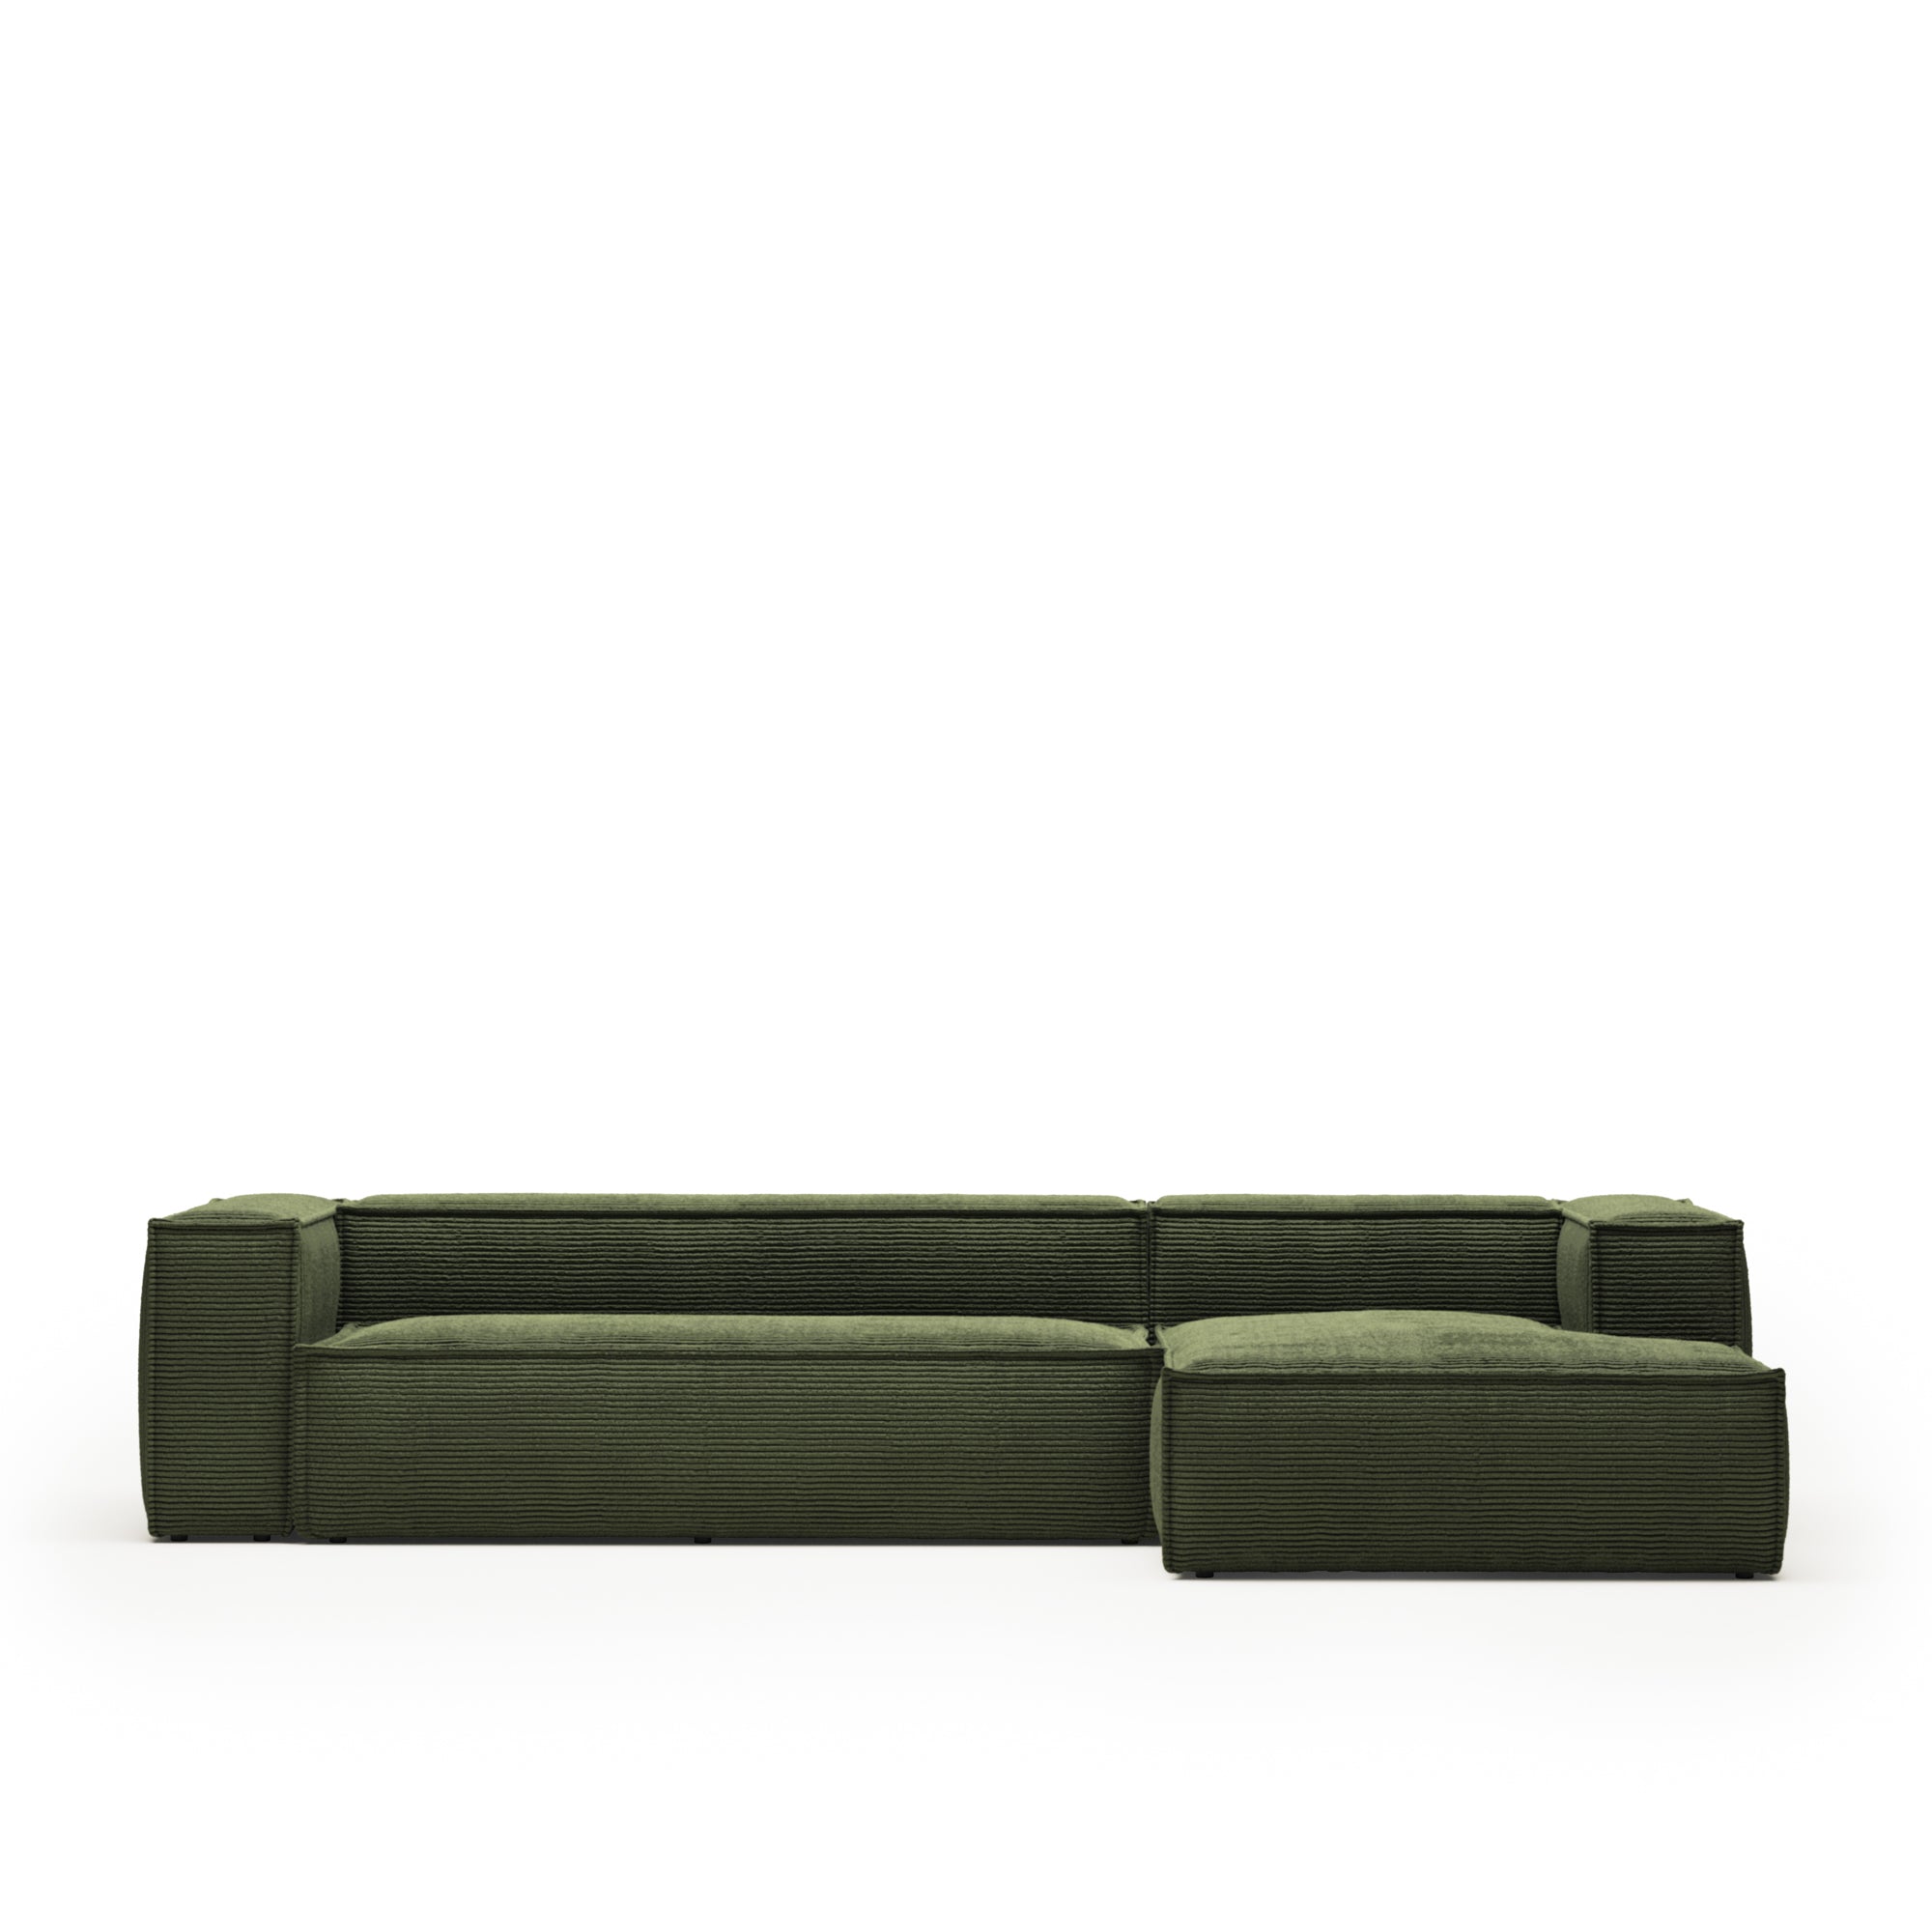 Blok 4 személyes kanapé jobb oldali fekvőfotellel, zöld széles varrású kordbársonyból, 330 cm